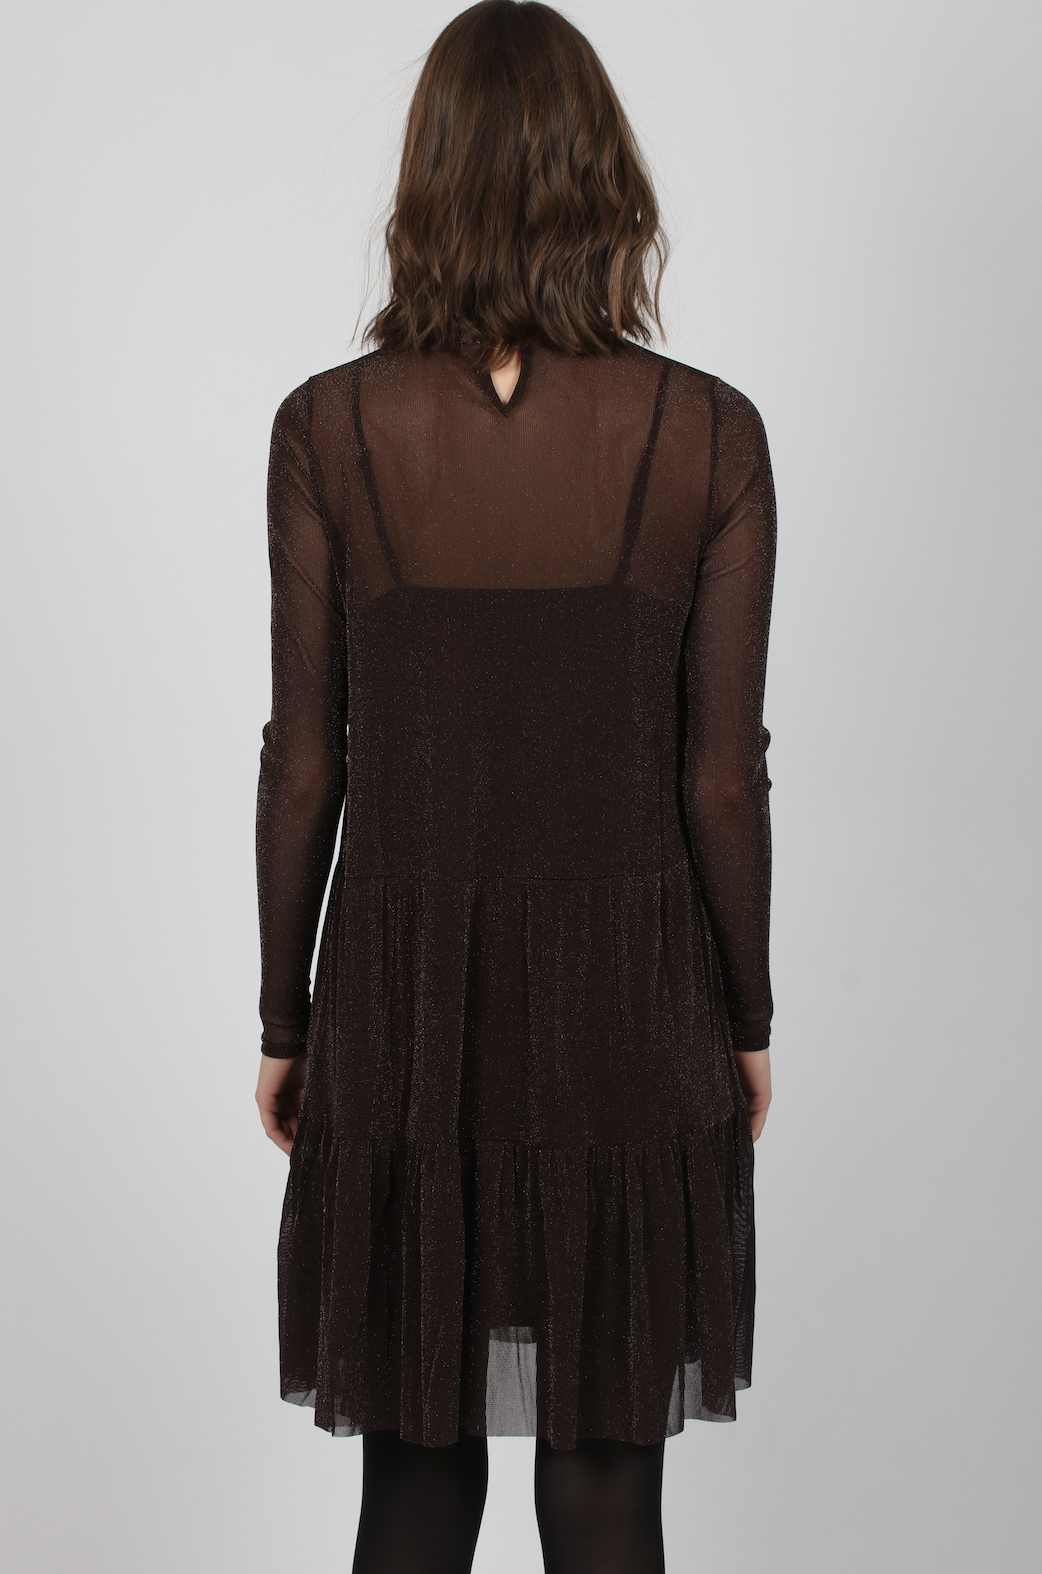 Kala Mesh Dress - Chocolate Brown - Neo Noir - Kjoler - VILLOID.no